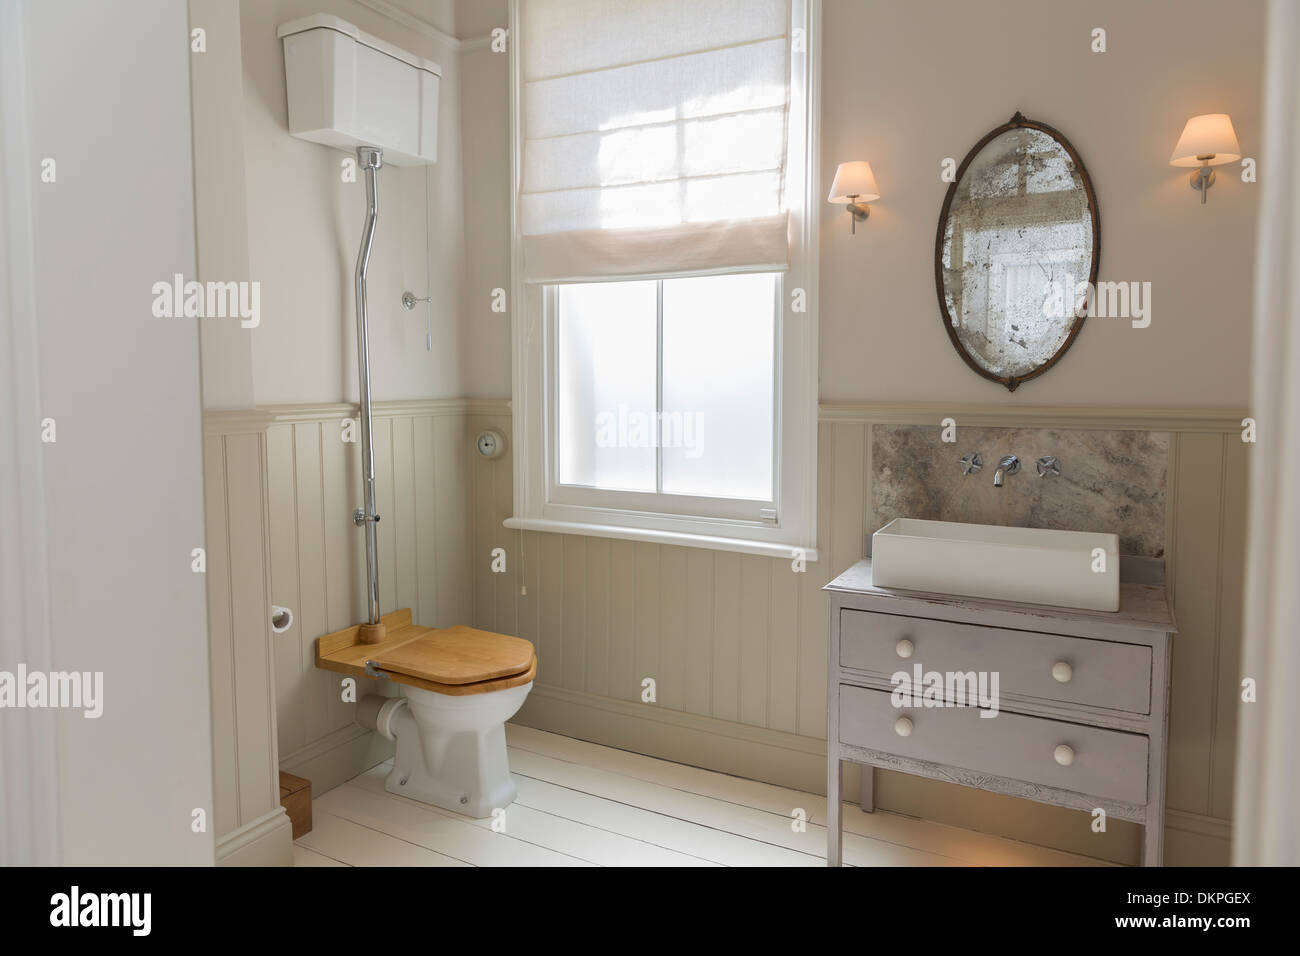 Inodoro y lavabo en baño ornamentado Foto de stock